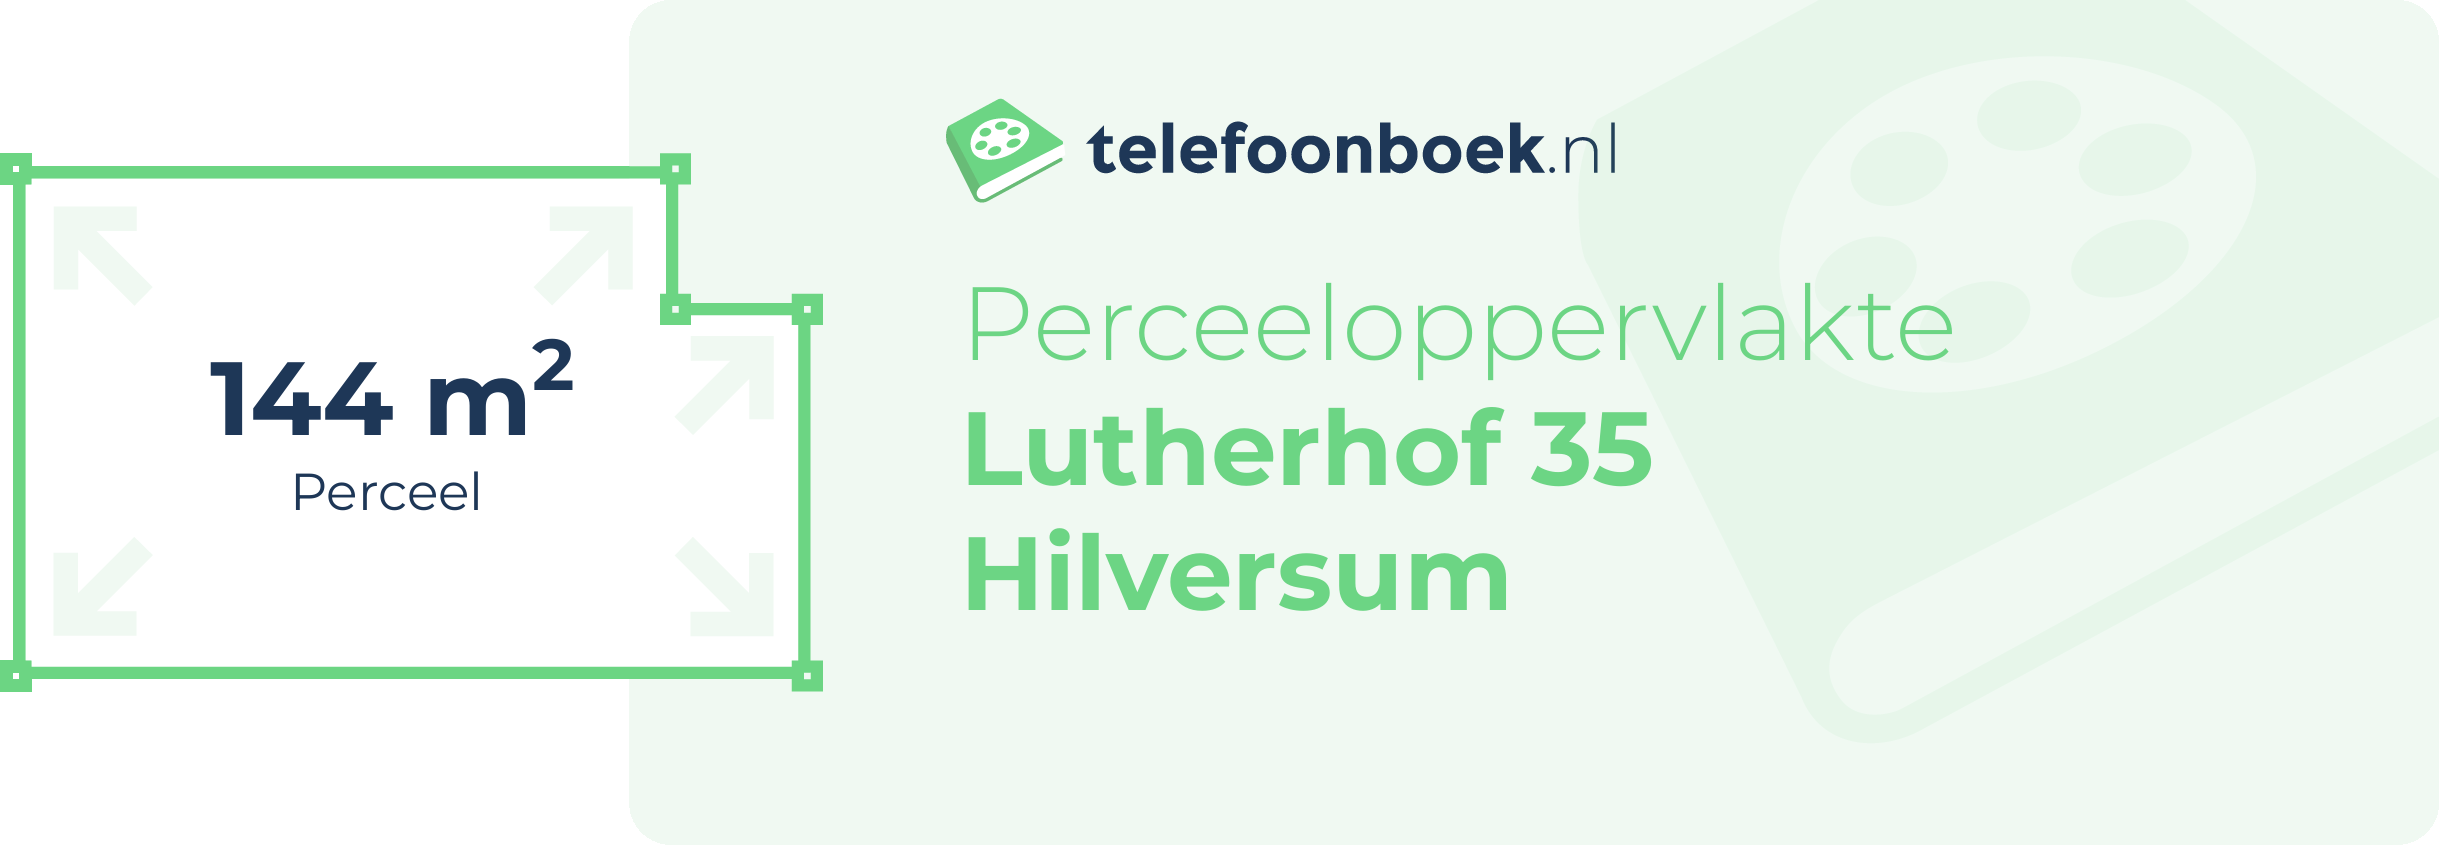 Perceeloppervlakte Lutherhof 35 Hilversum